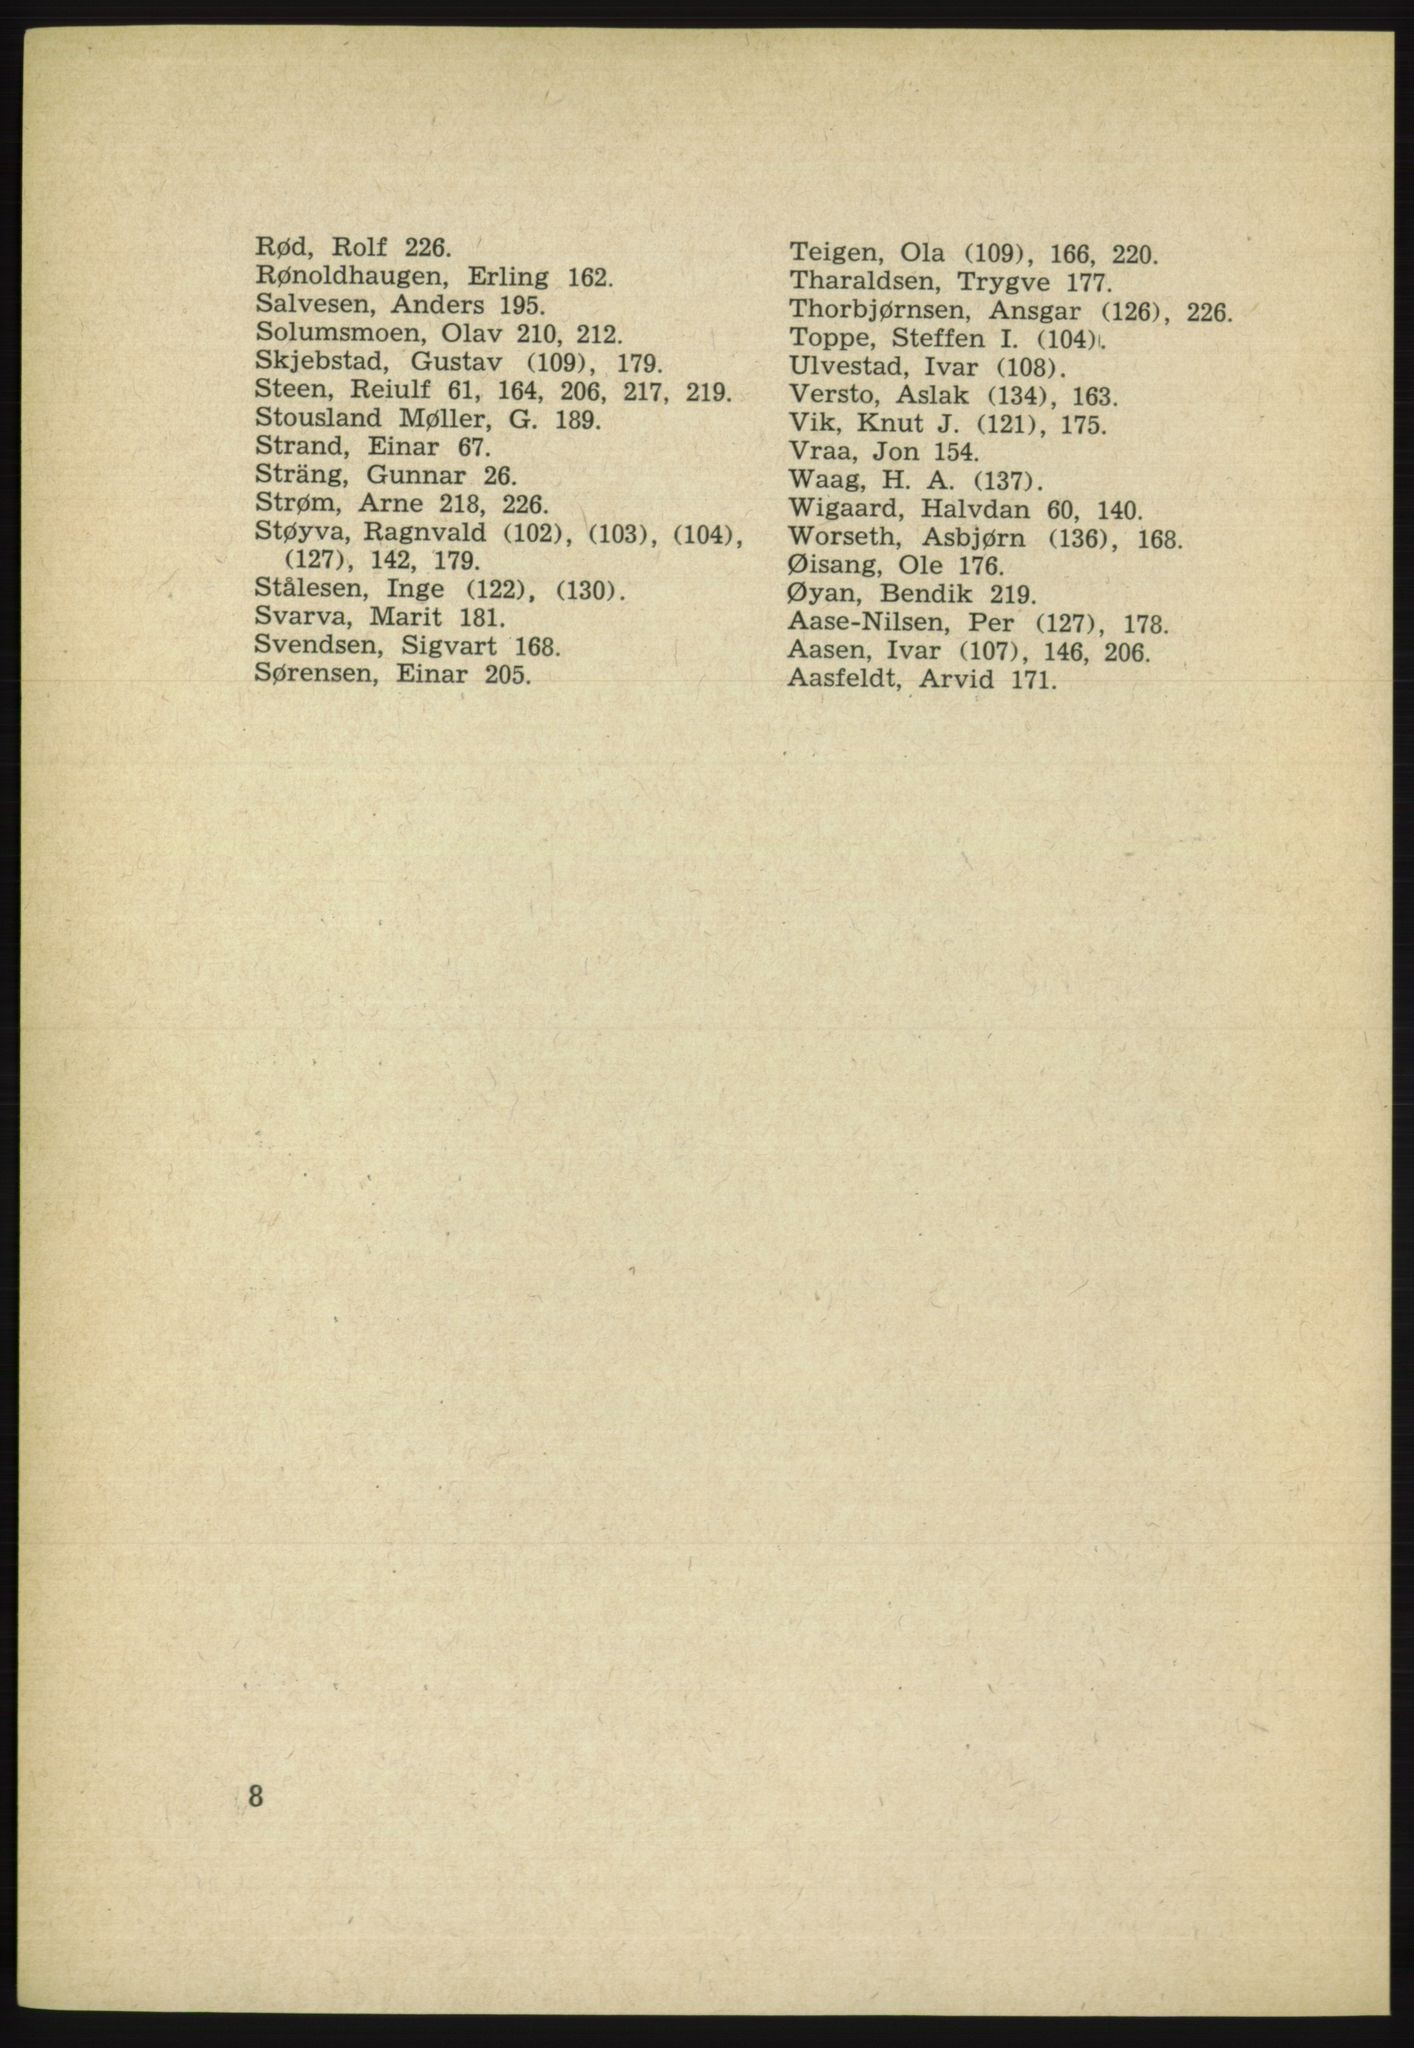 Det norske Arbeiderparti - publikasjoner, AAB/-/-/-: Protokoll over forhandlingene på det 38. ordinære landsmøte 9.-11. april 1961 i Oslo, 1961